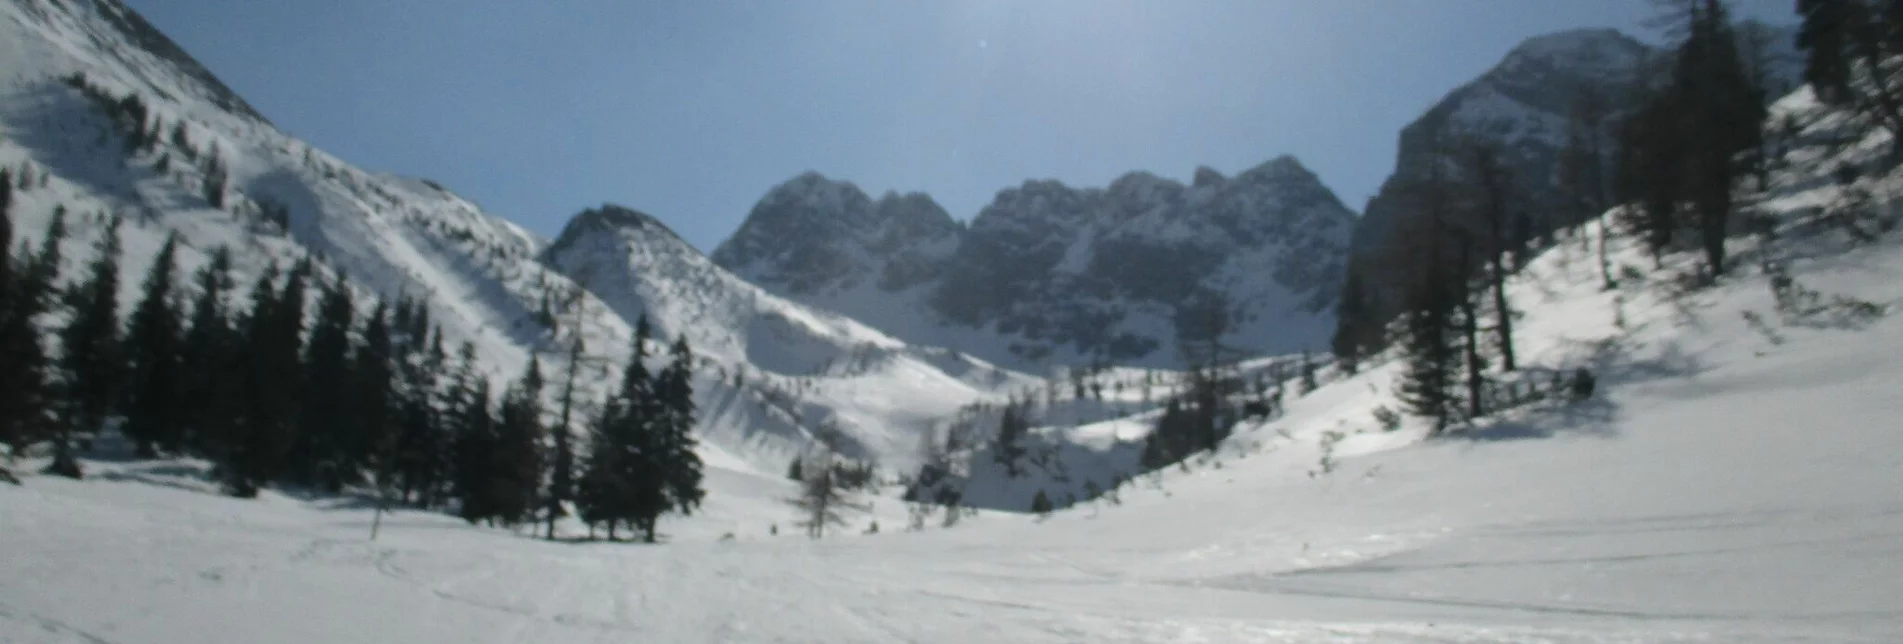 Skitour Kerschkern, Traumtour im Triebental - Touren-Impression #1 | © Erlebnisregion Murtal